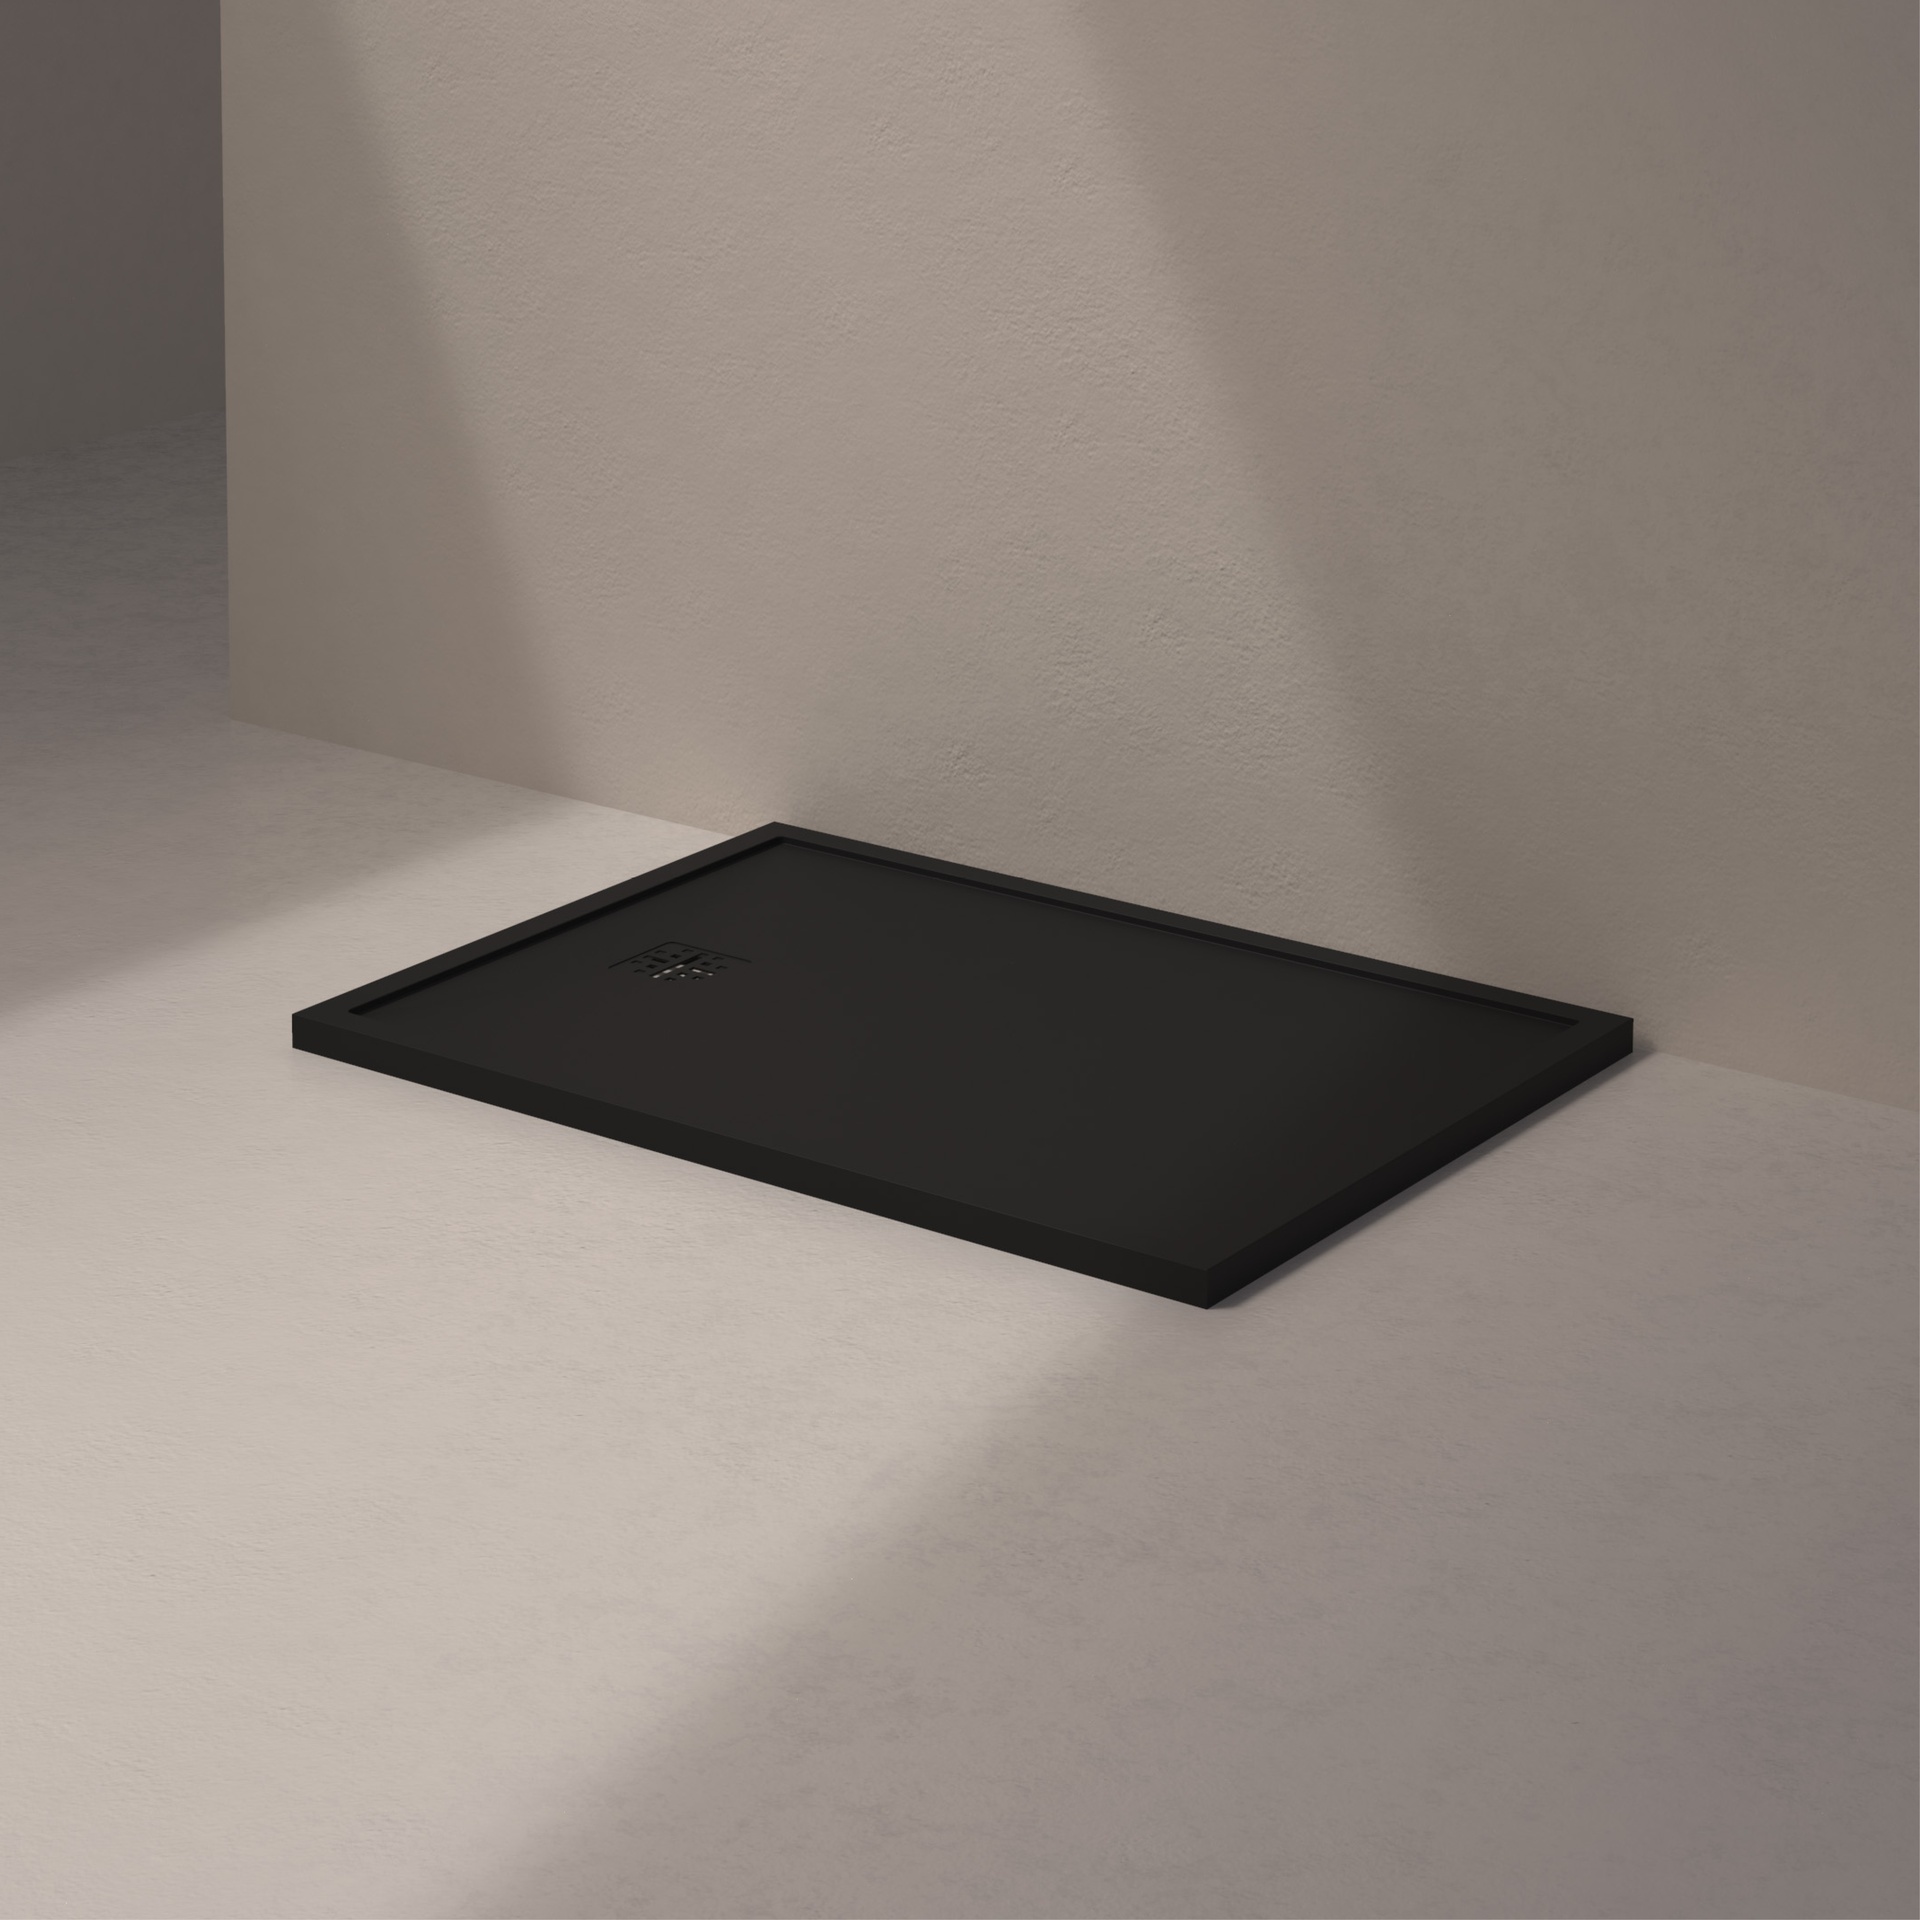 [MSTES90120-BLACK] Mist douche vloer, korte zijde afvoer (120x90, natuursteen zwart)